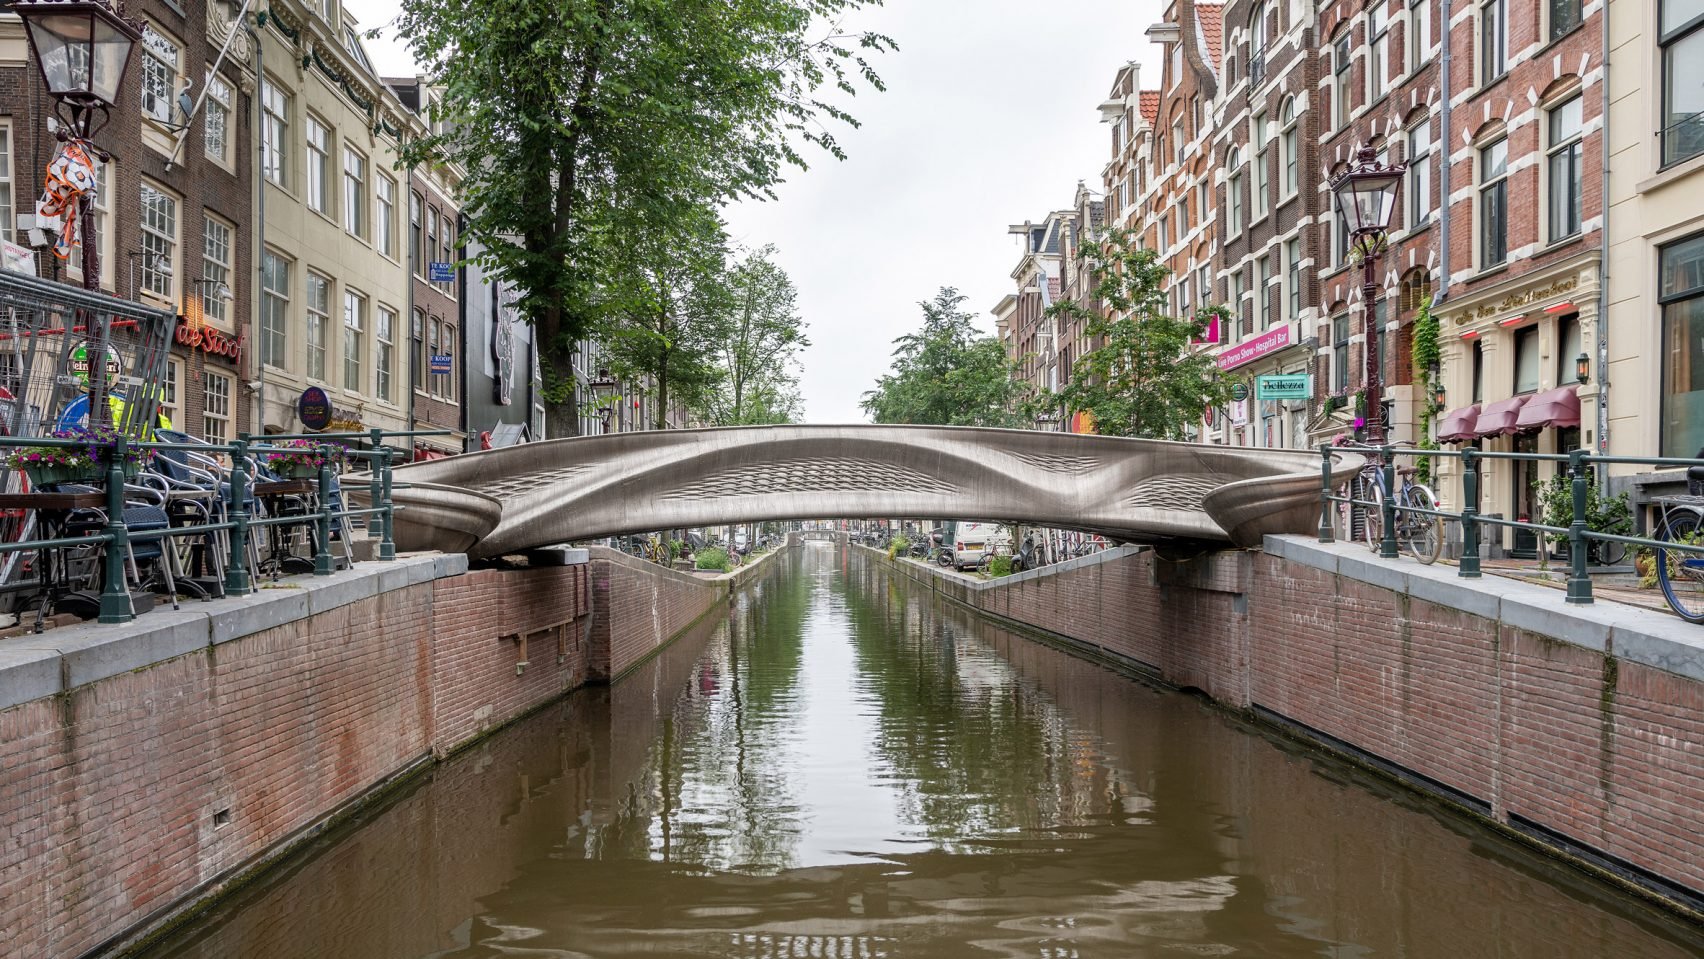 Joris Laarman's 3D-printed stainless steel bridge finally opens in Amsterdam